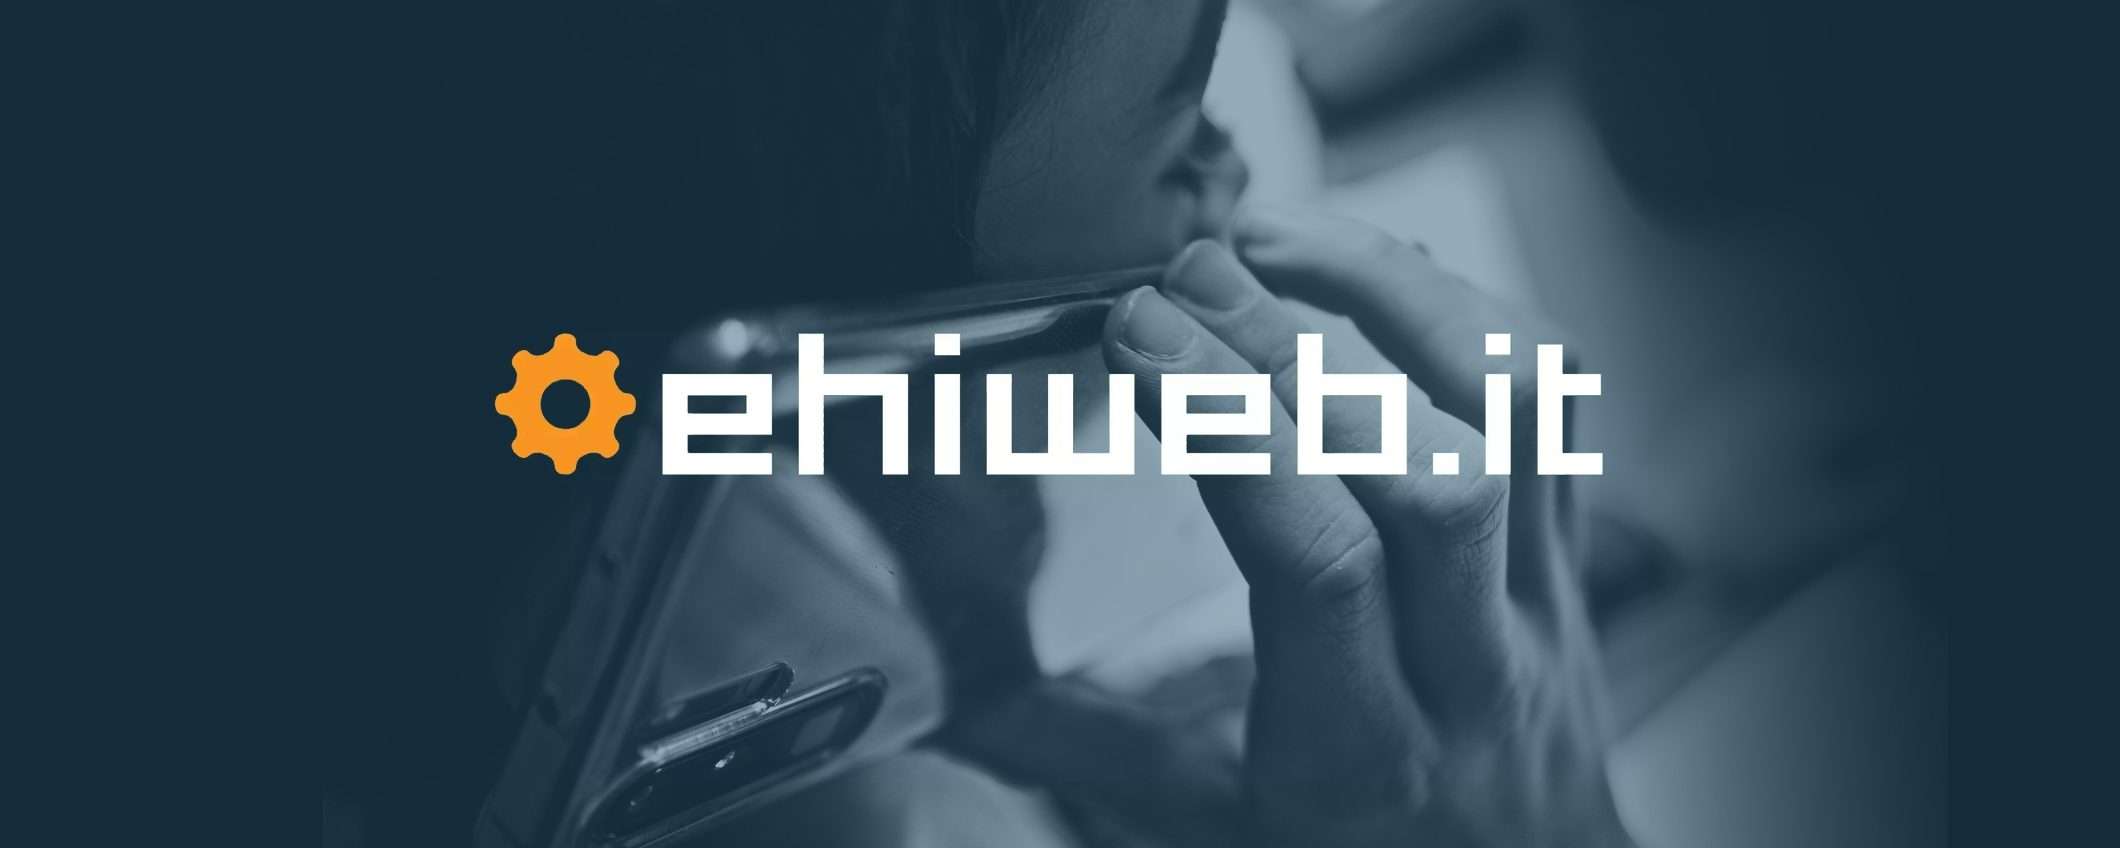 Ehiweb, VoLTE è un valore aggiunto per le SIM Business